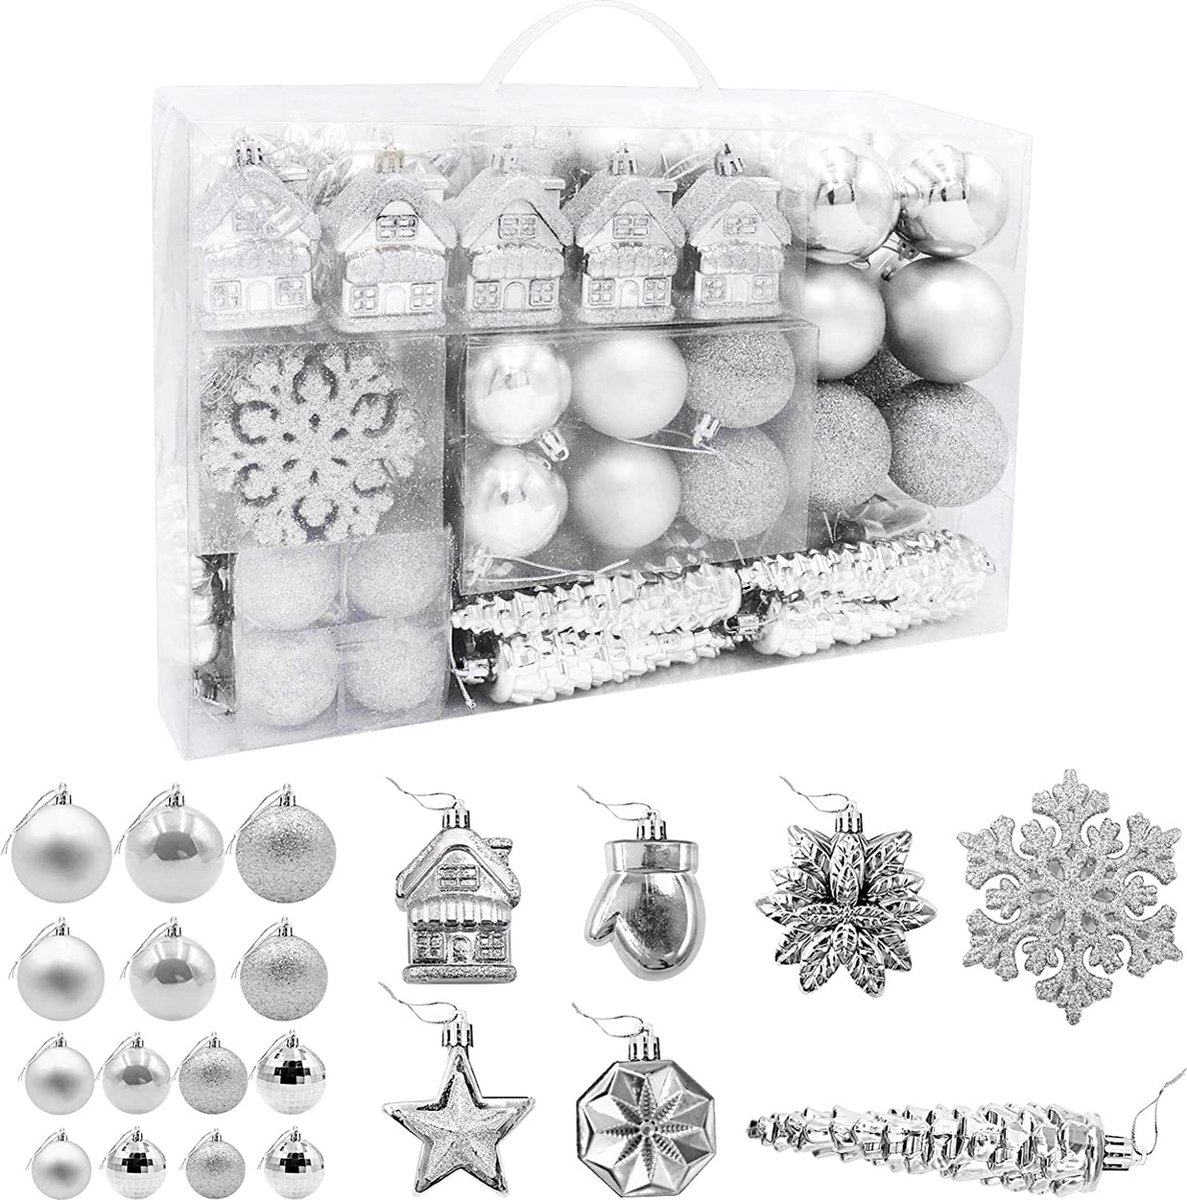 113 kerstballen, kerstboomversiering, ophanghaakjes, kerstballen voor de kerstboomversiering, kerstballen (zilver)